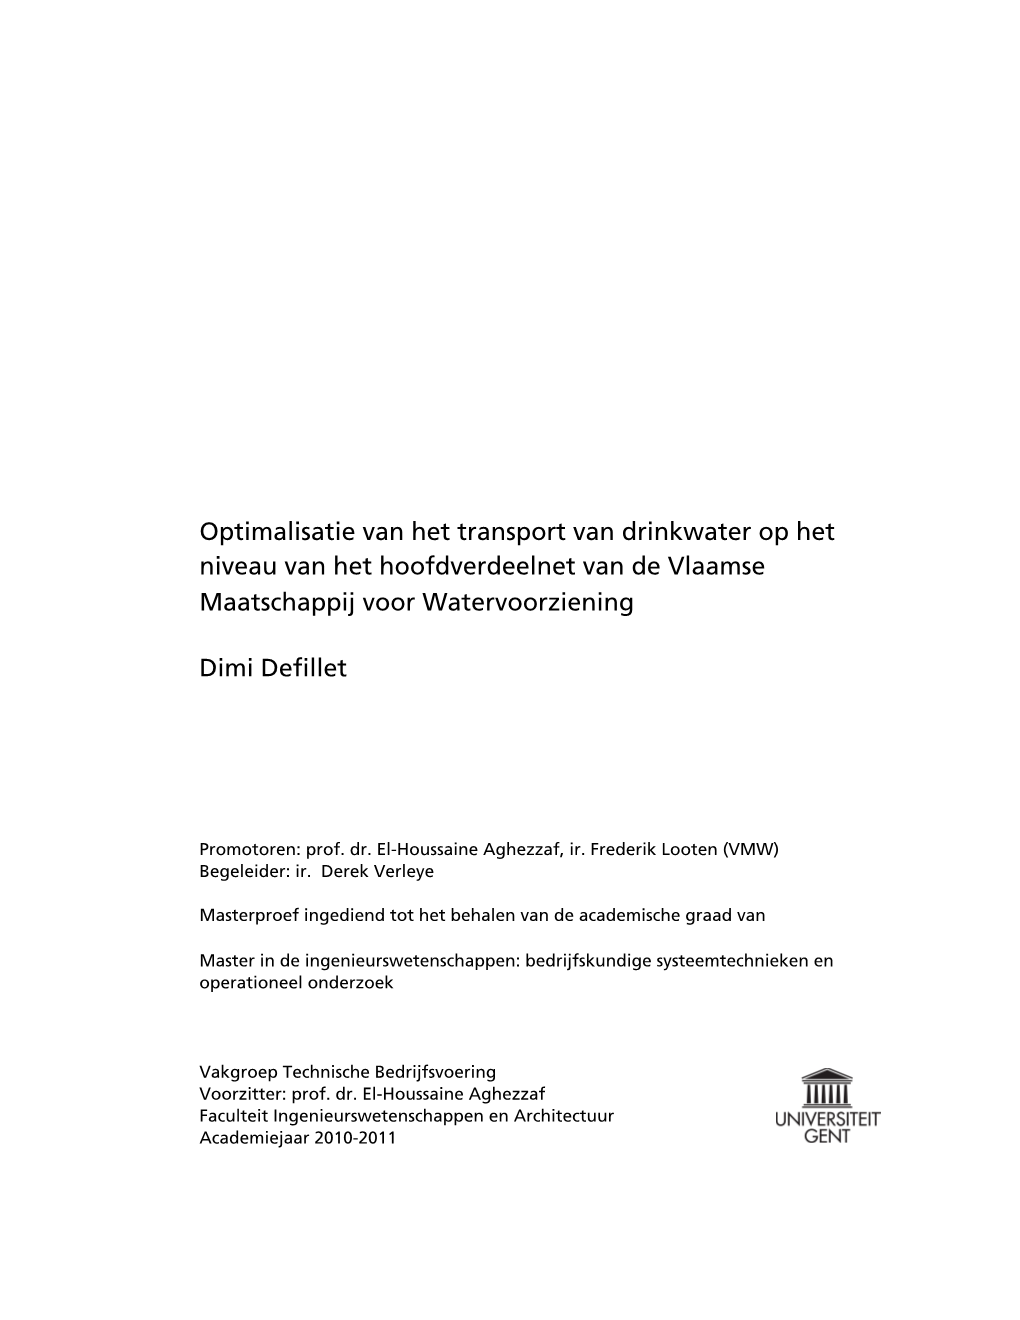 Optimalisatie Van Het Transport Van Drinkwater Op Het Niveau Van Het Hoofdverdeelnet Van De Vlaamse Maatschappij Voor Watervoorziening